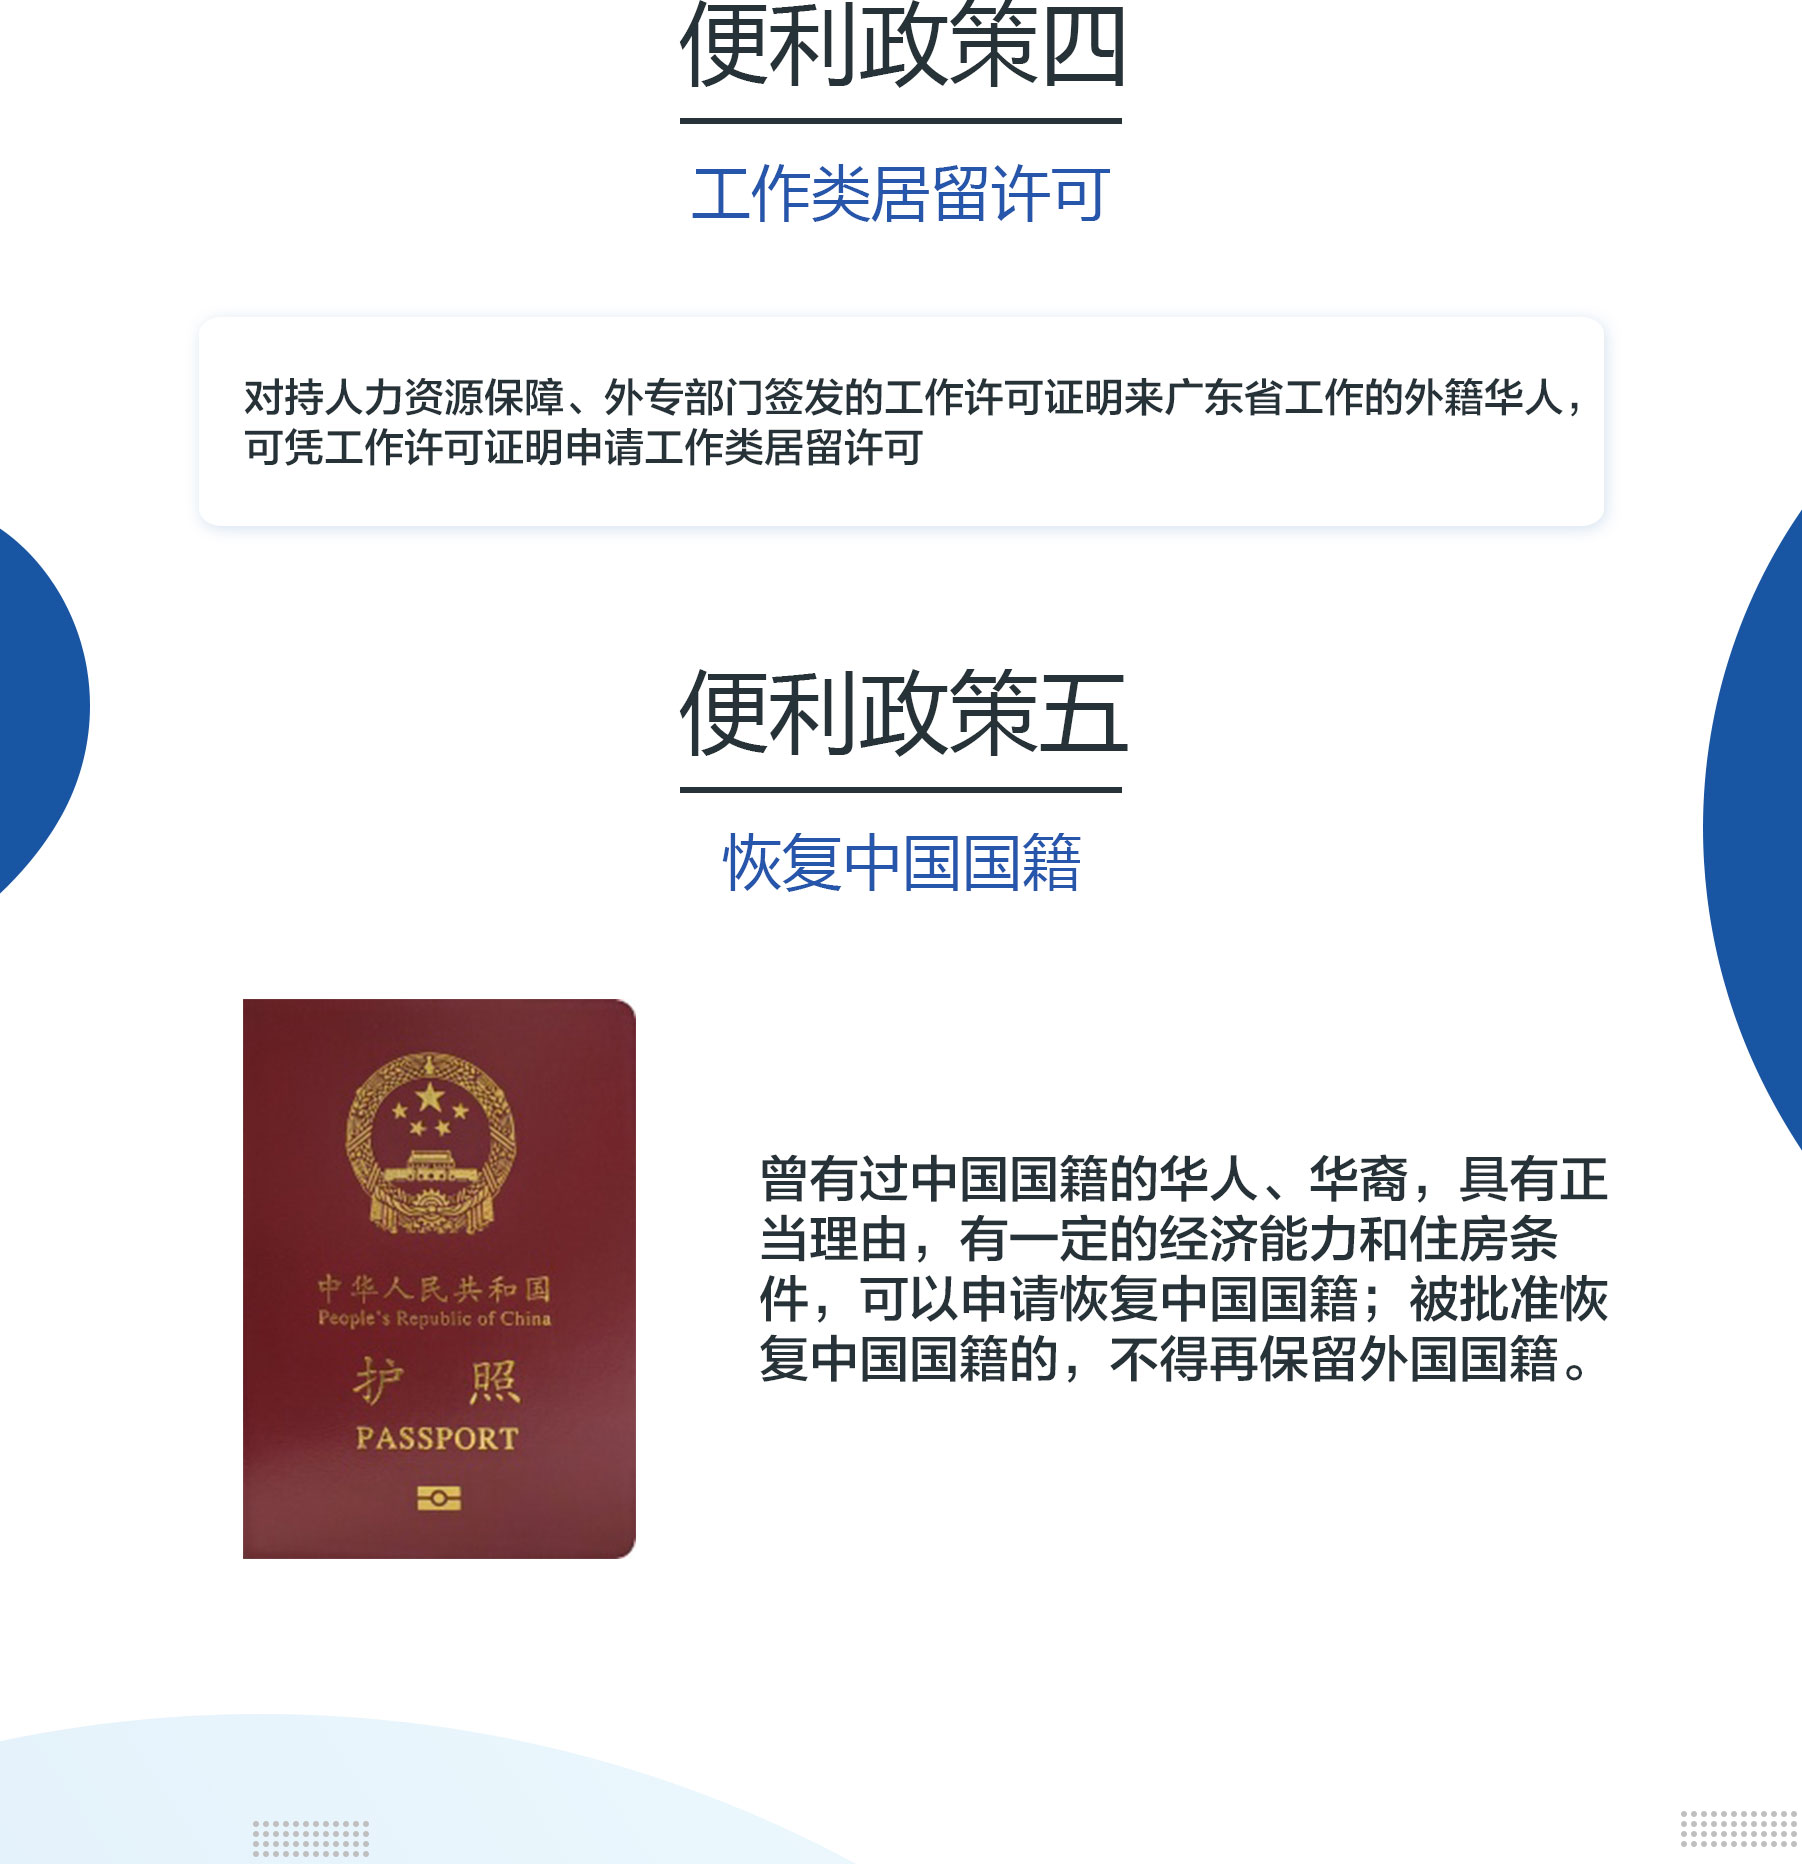 中国签证-(2)_04.jpg